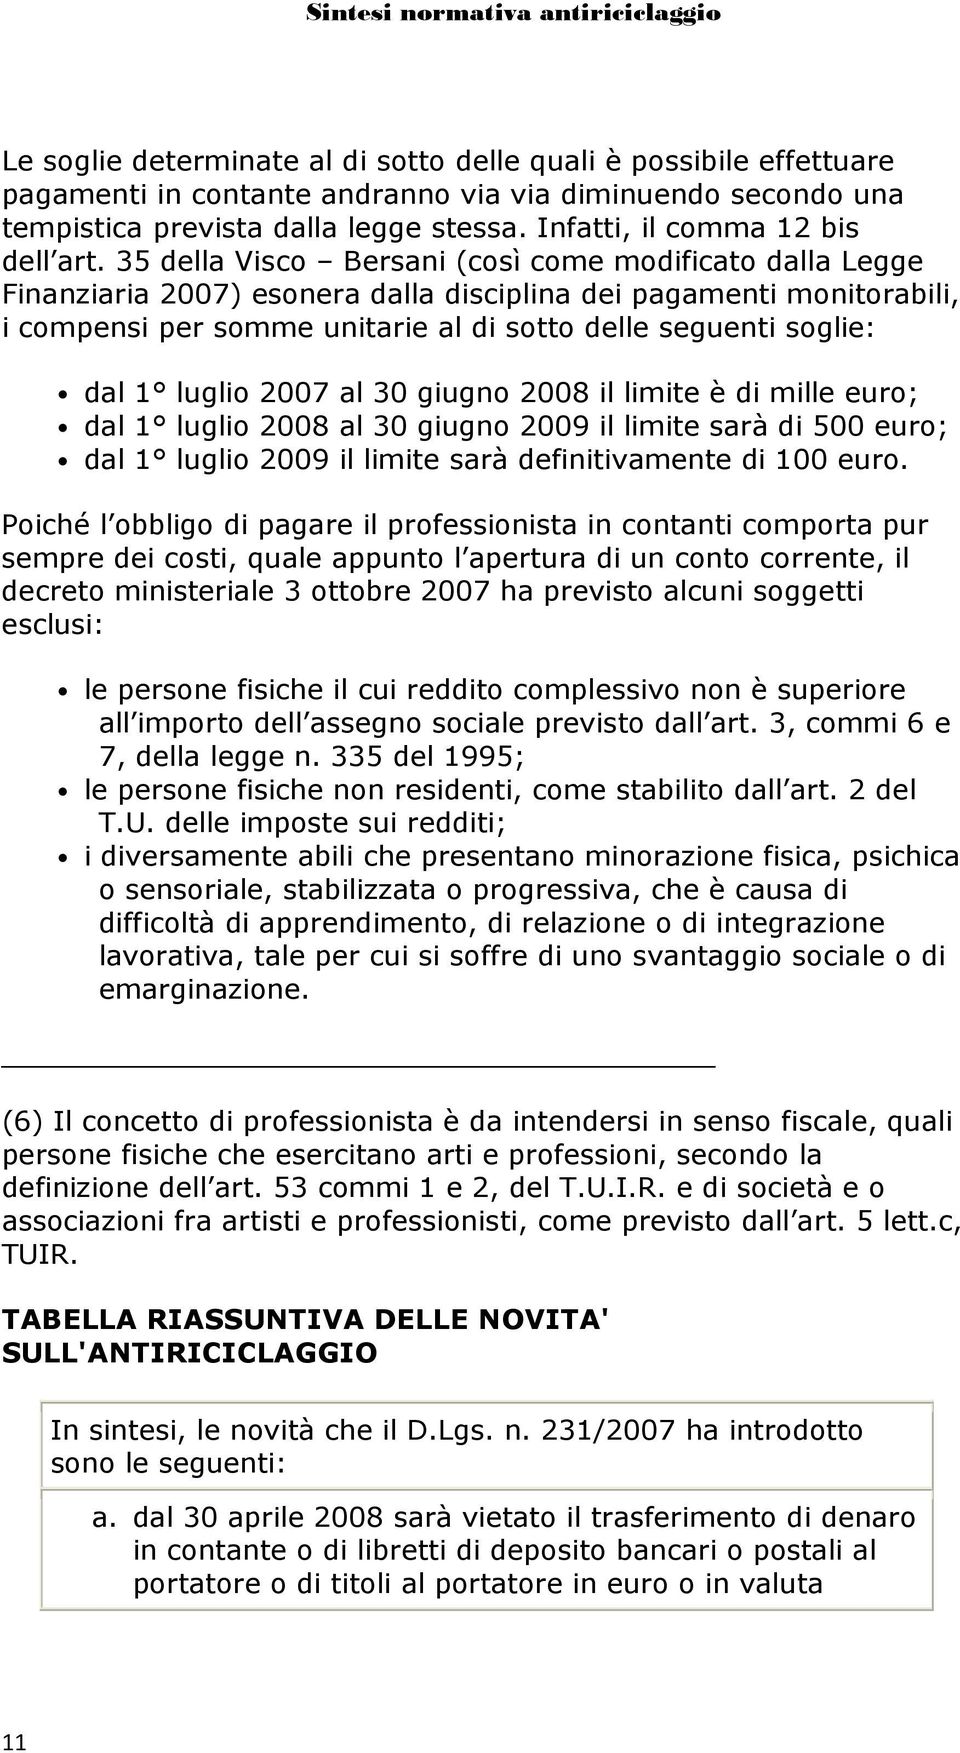 35 della Visco Bersani (così come modificato dalla Legge Finanziaria 2007) esonera dalla disciplina dei pagamenti monitorabili, i compensi per somme unitarie al di sotto delle seguenti soglie: dal 1